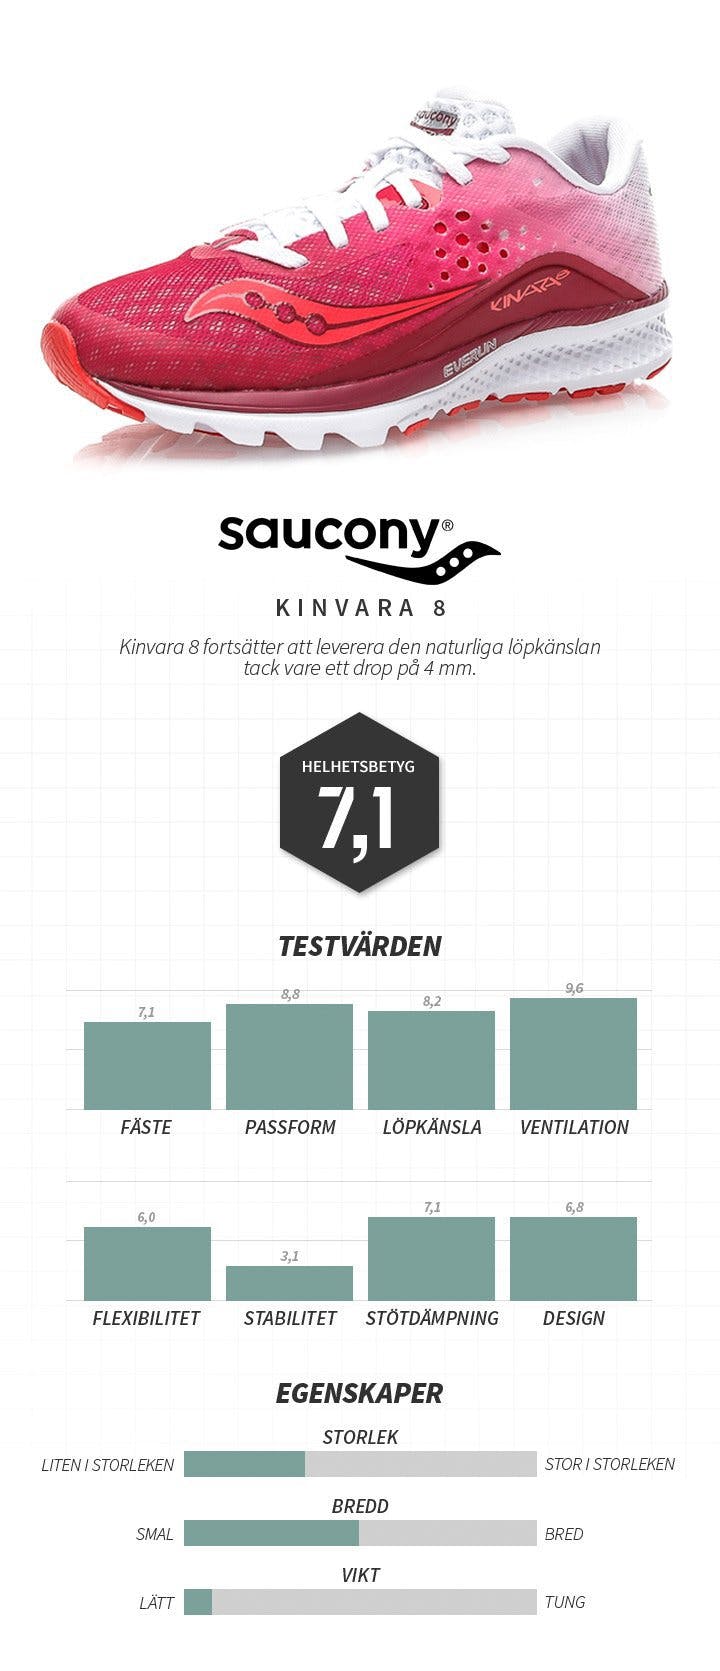 Saucony_kinvara 8